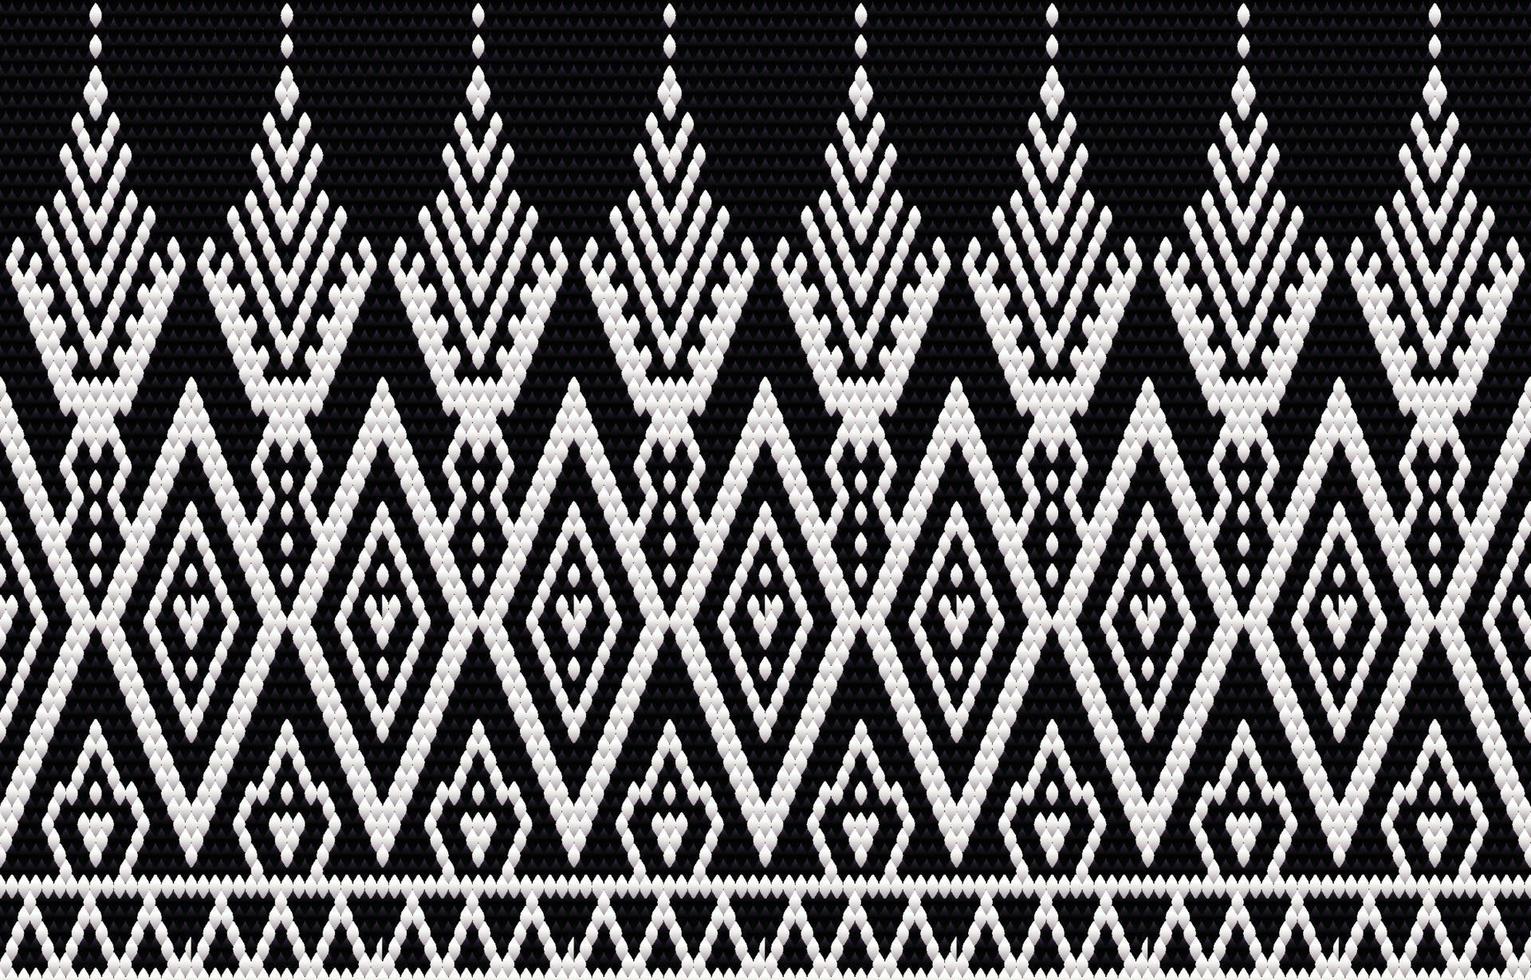 geometrische ethnische Musterstickerei und traditionelles Design. Stammes ethnische Vektor Textur. Design für Teppich, Tapete, Kleidung, Verpackung, Batik, Stoff im Stickstil in ethnischen Themen.